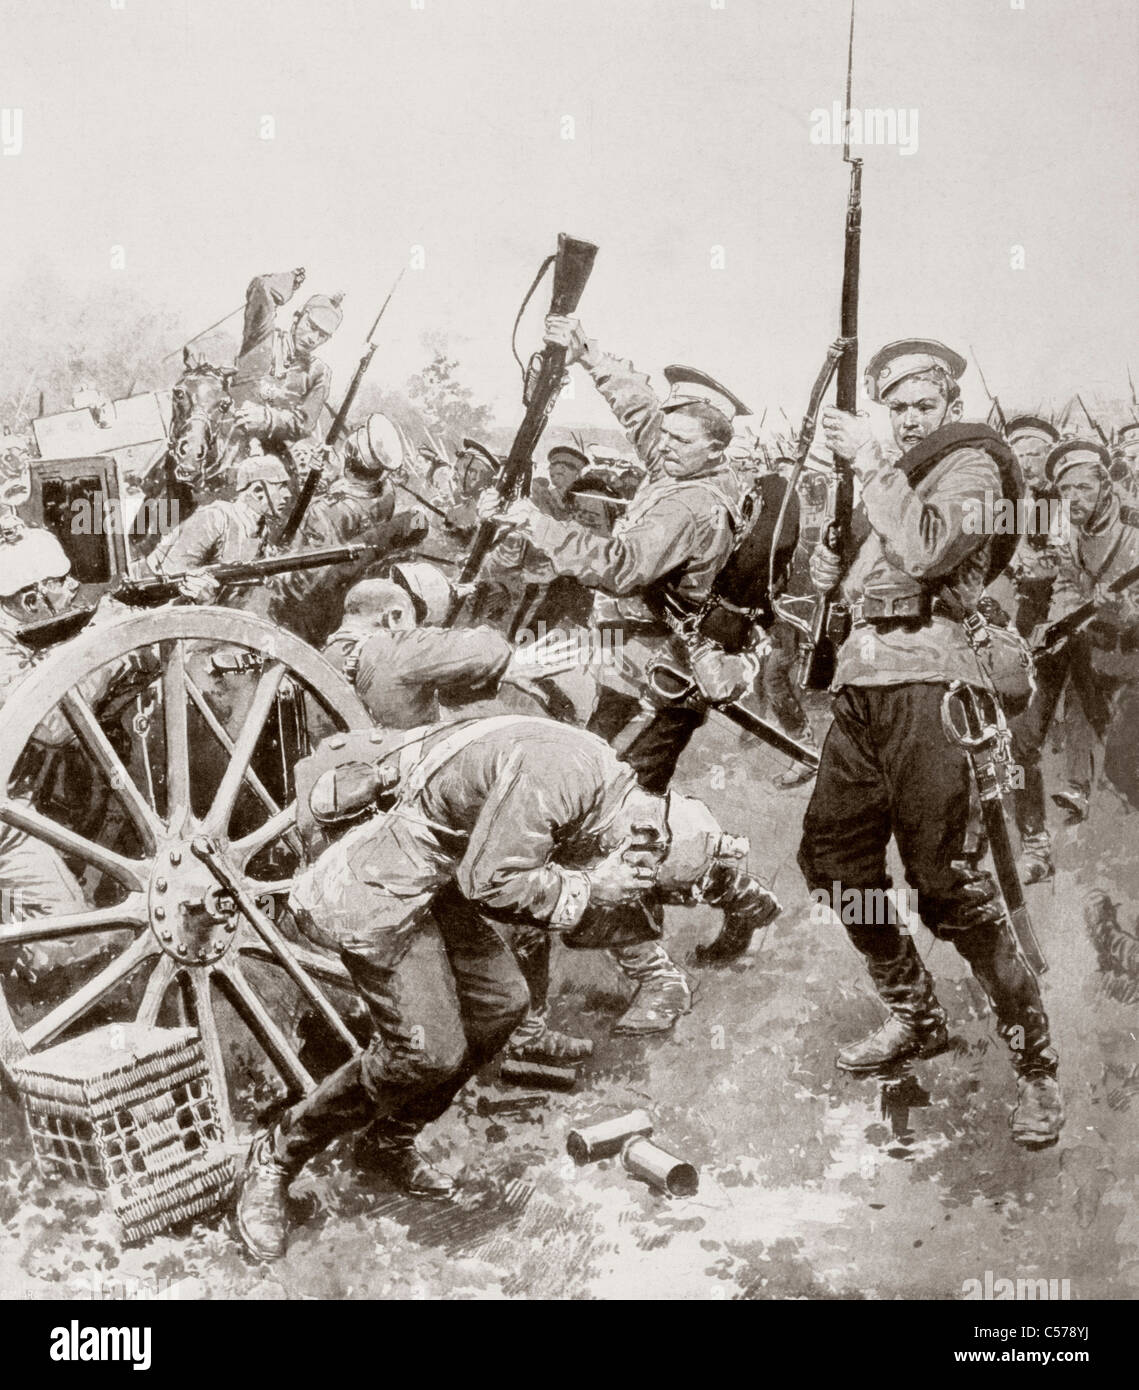 L'infanterie russe d'attaquer les lignes allemandes avec une charge à la baïonnette entre Korschen et Bartenstein, Prusse Orientale, Août 1914 Banque D'Images